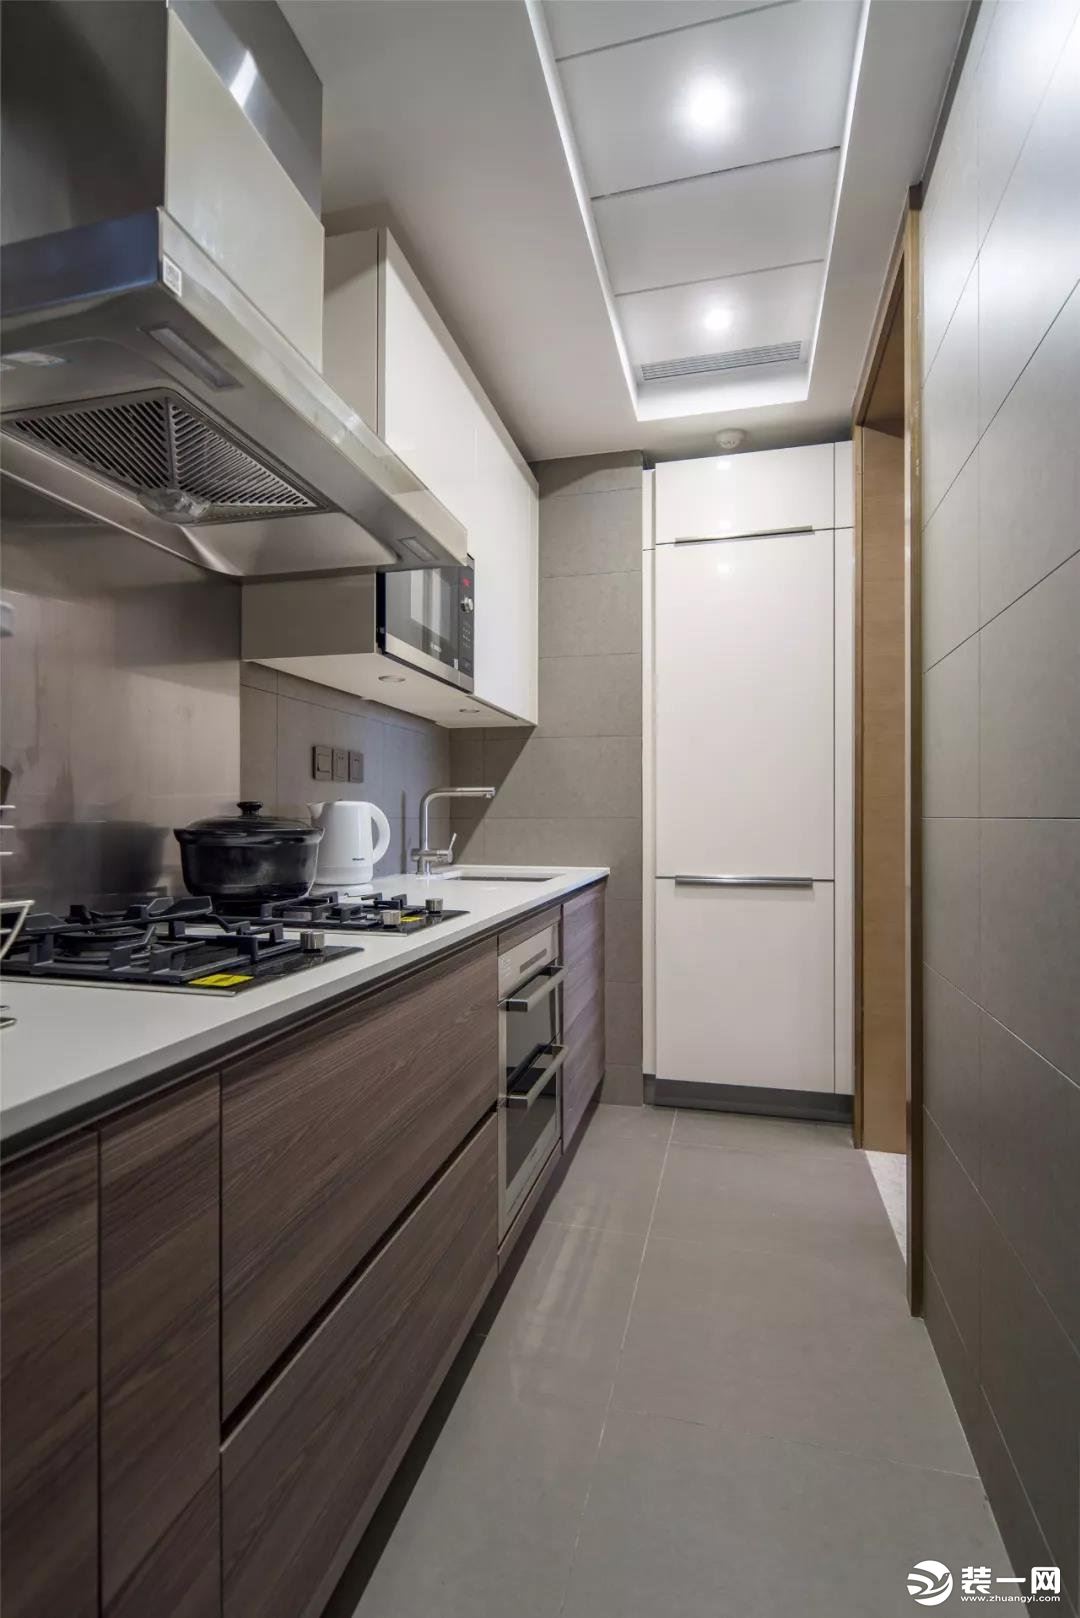 厨房是一个狭长的空间，一字型布局，把冰箱嵌入墙内，看起来整洁大方。